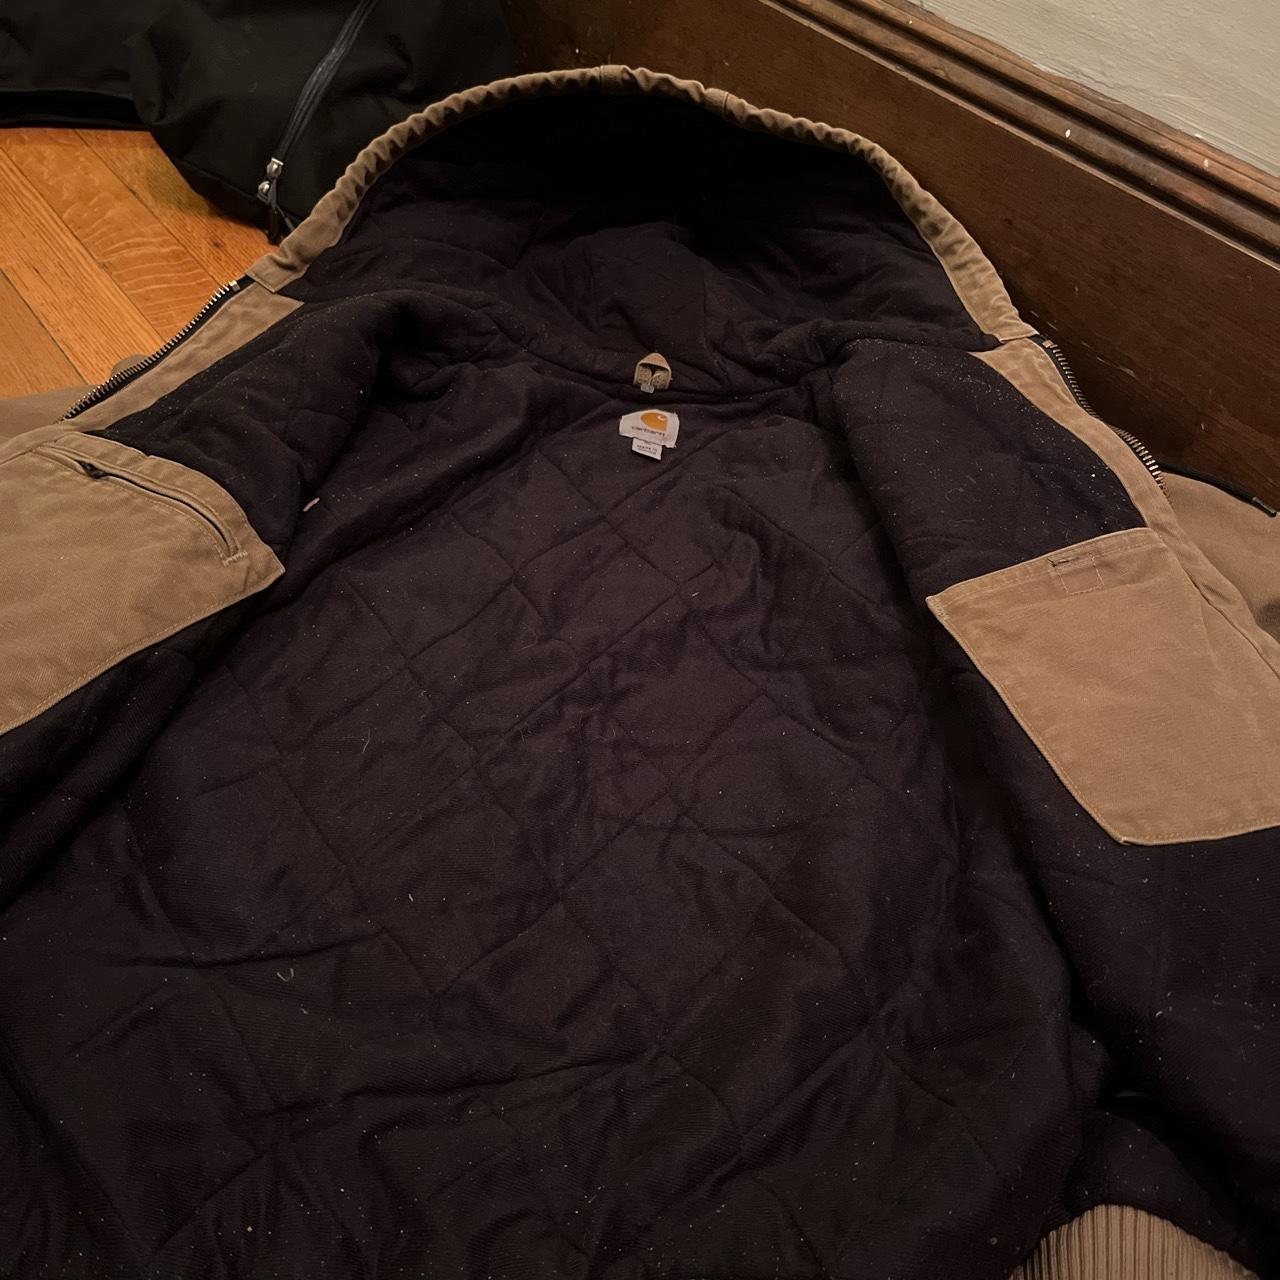 Vintage carhartt active jacket. Model J130 FRB size... - Depop